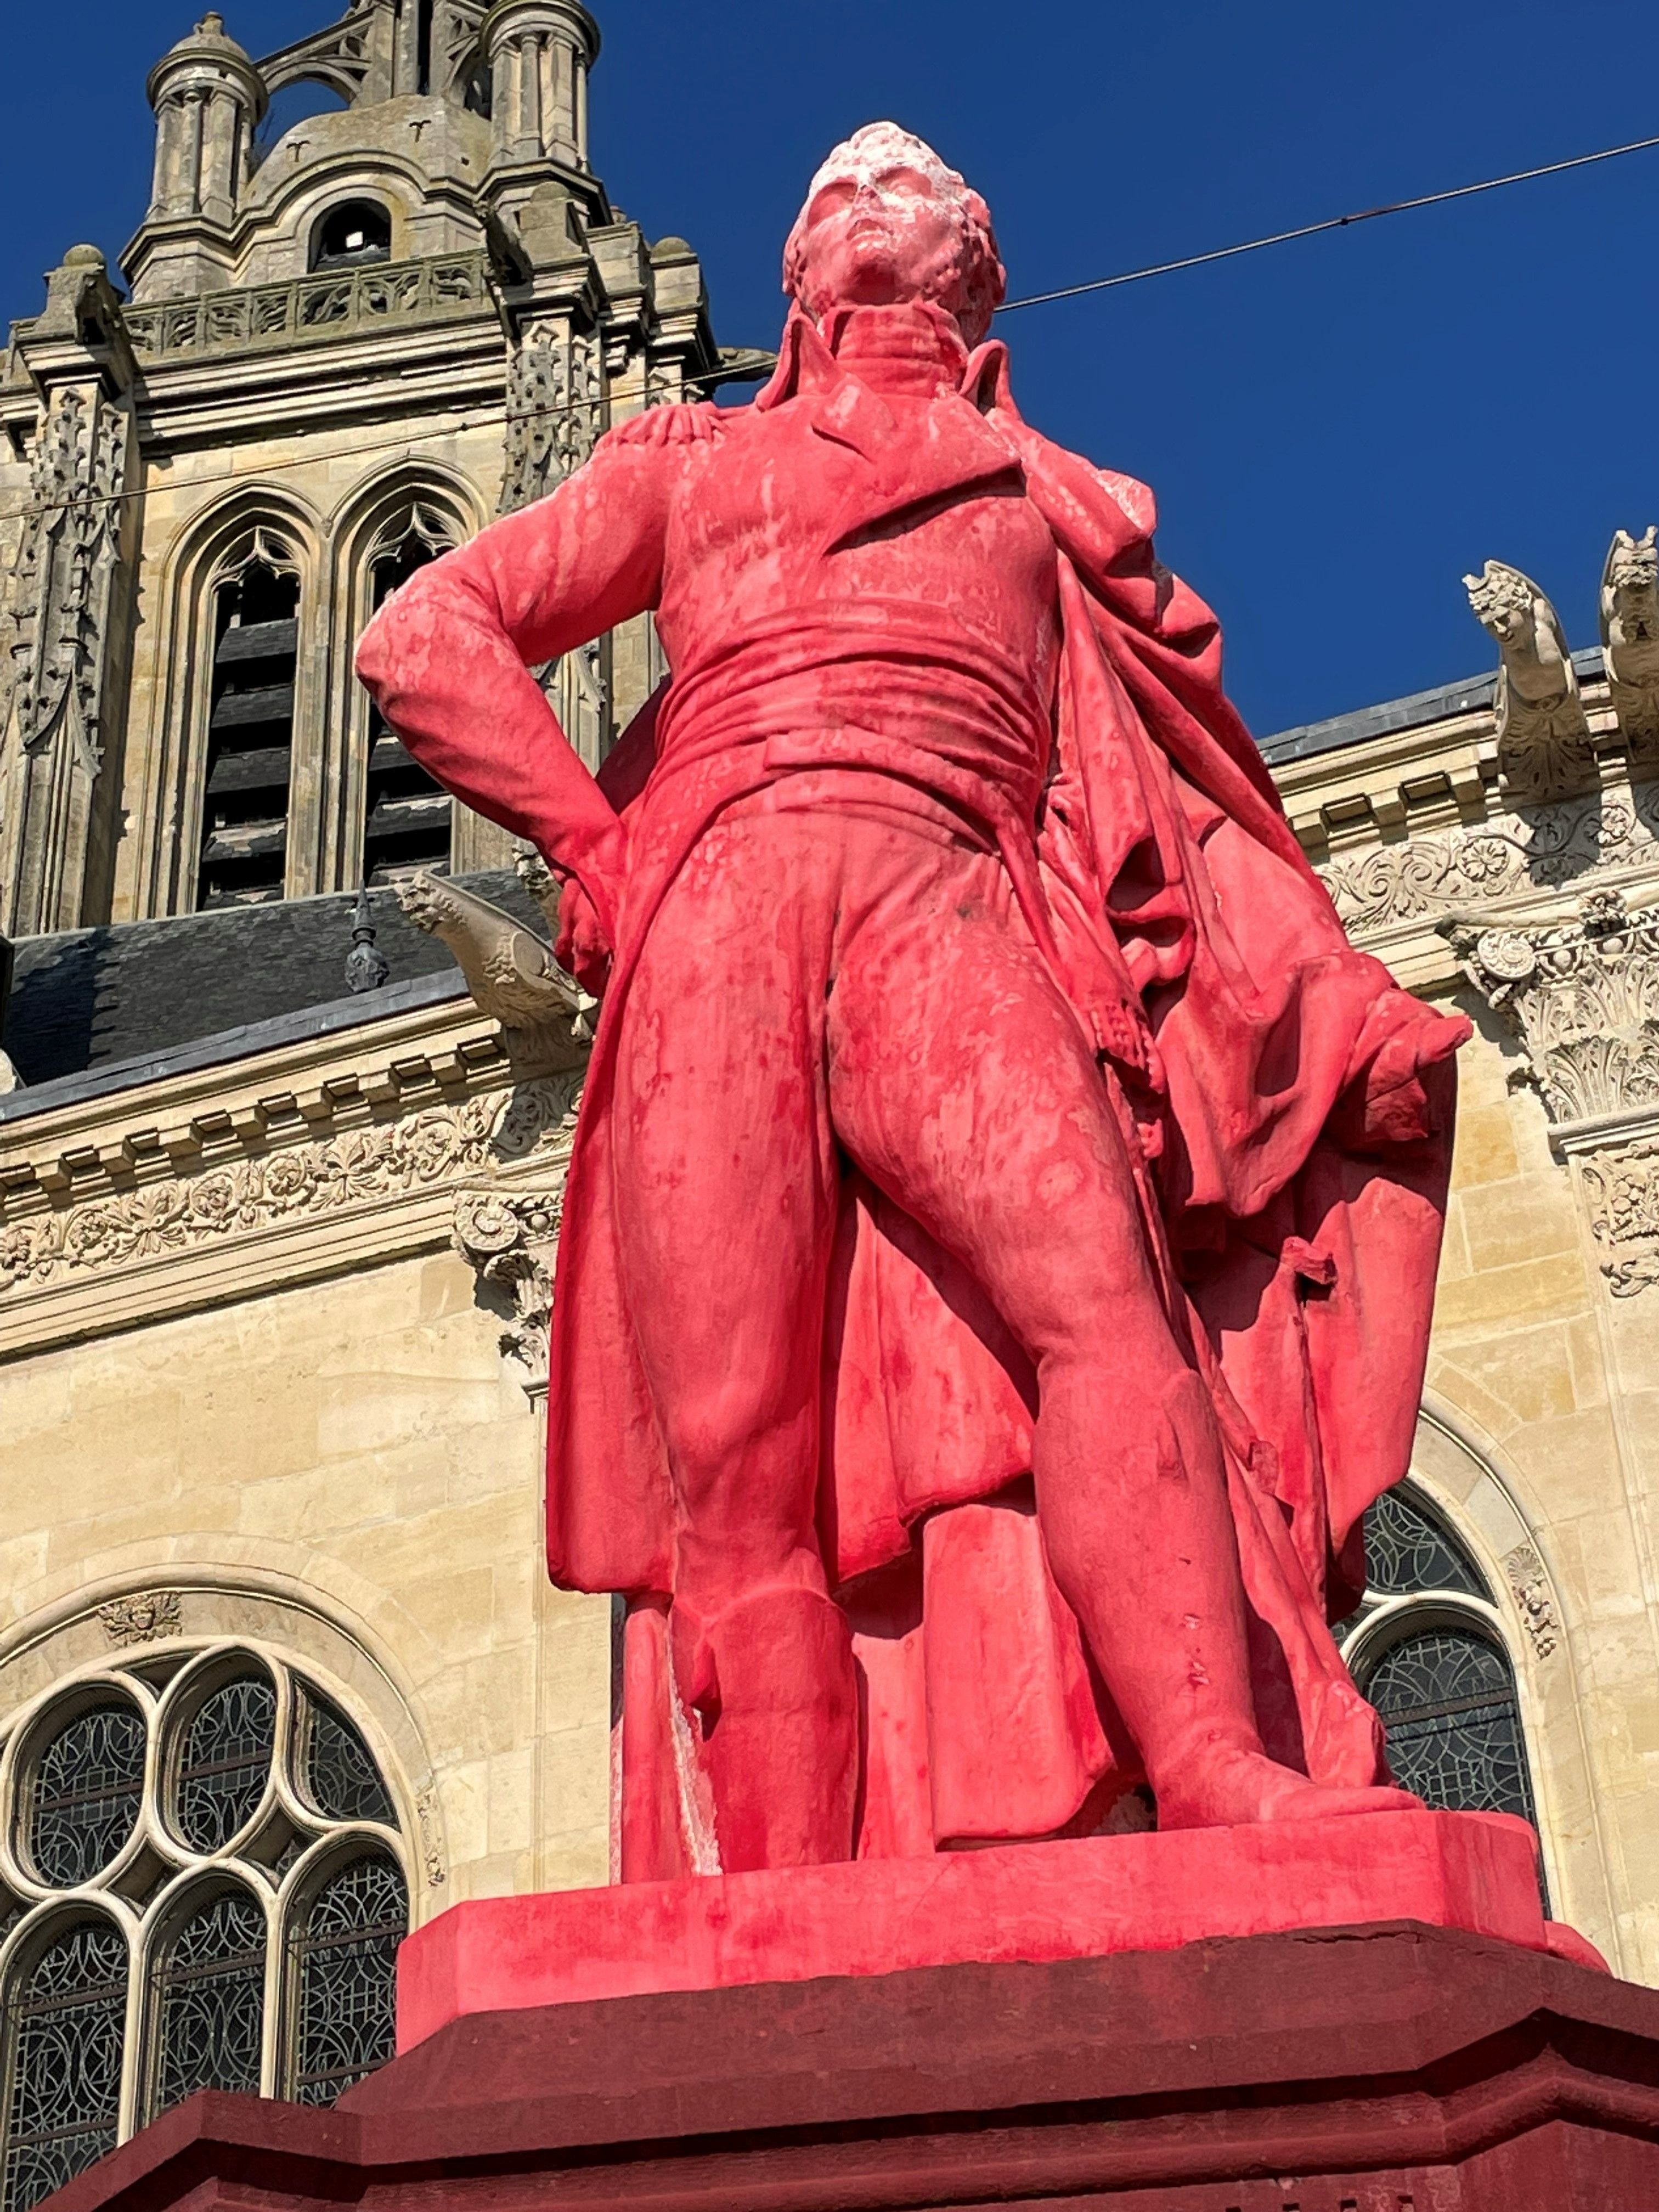 La statue du général Charles Victoire Emmanuel Leclerc, à Pontoise, a été recouverte de peinture rouge par un commando, qui voulait sans doute évoquer le rouge du sang versé par ce proche de Bonaparte sur l'île de Saint-Domingue. DR